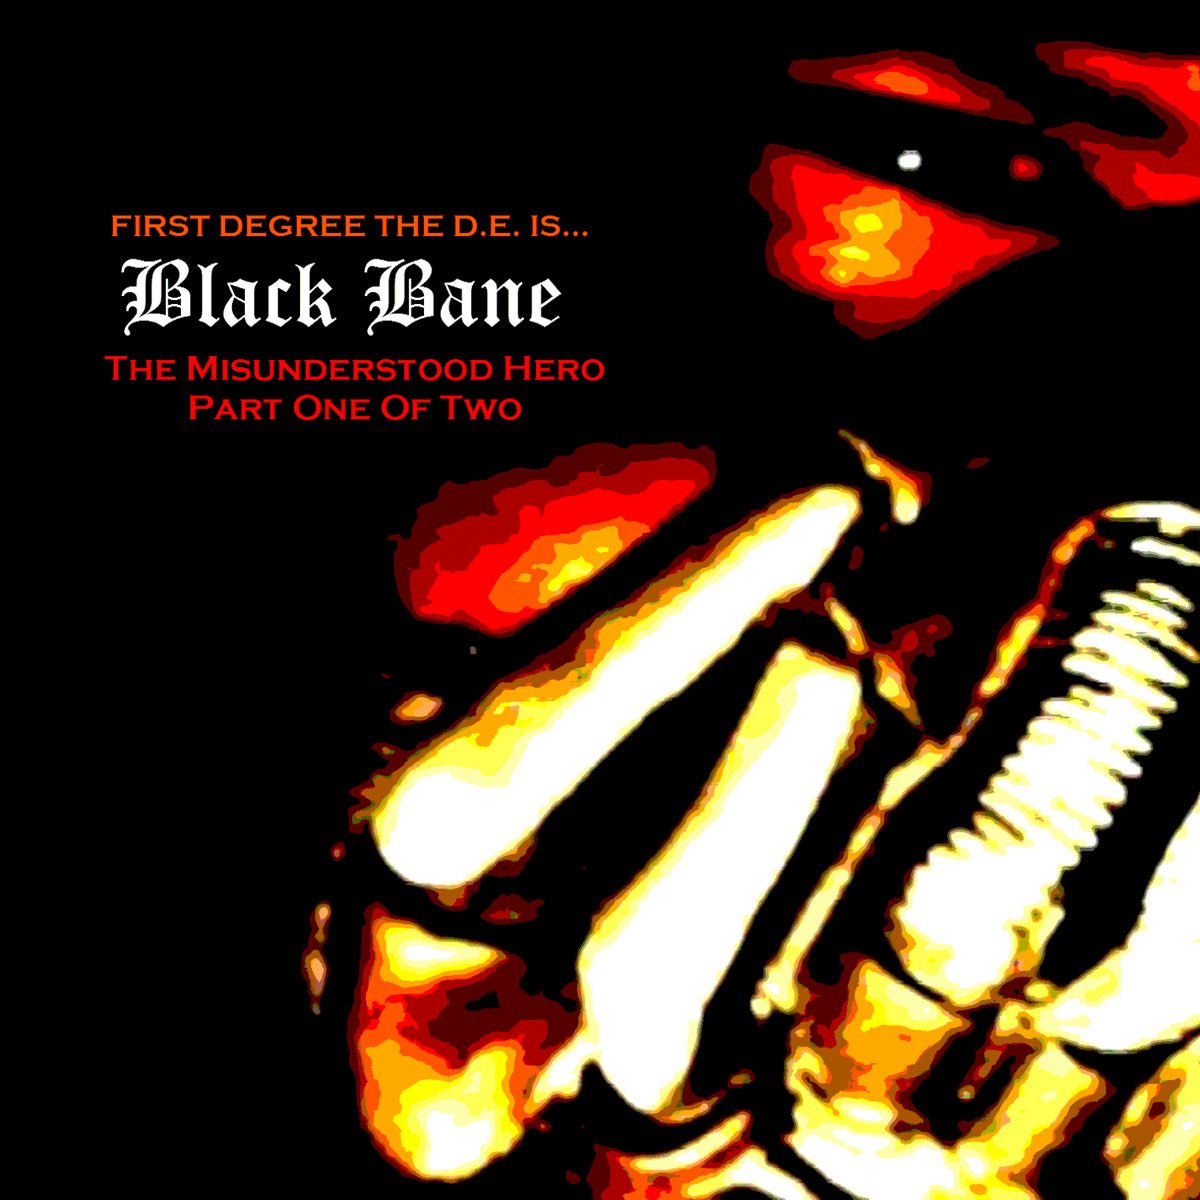 First Degree The D.E. - Black Bane The Misunderstood Hero, Pt. 1